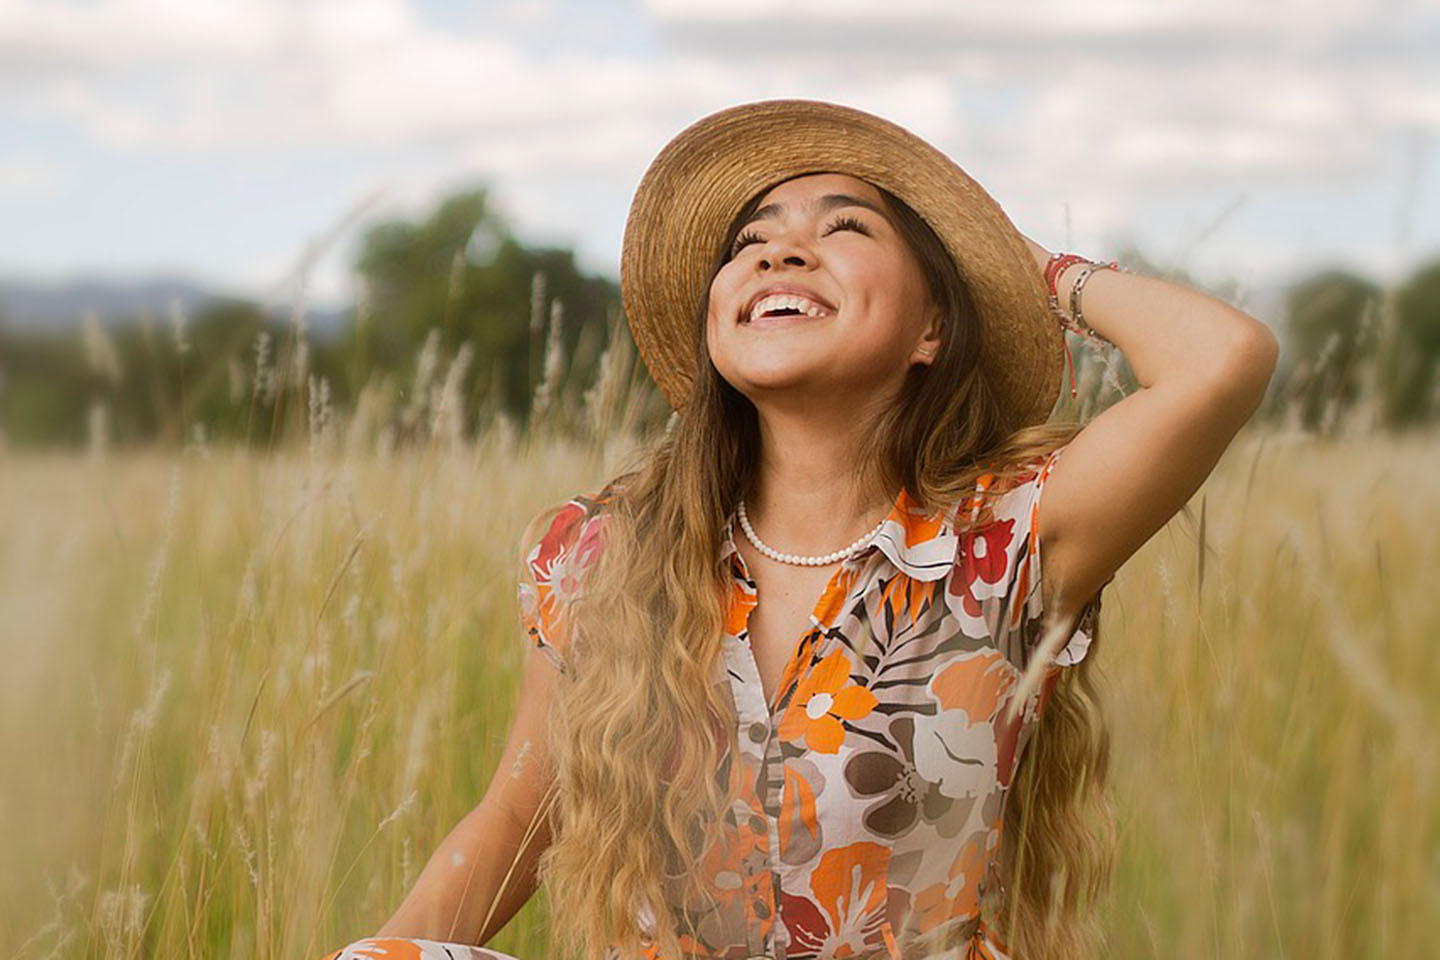 happy girl in flower dress standing in a field